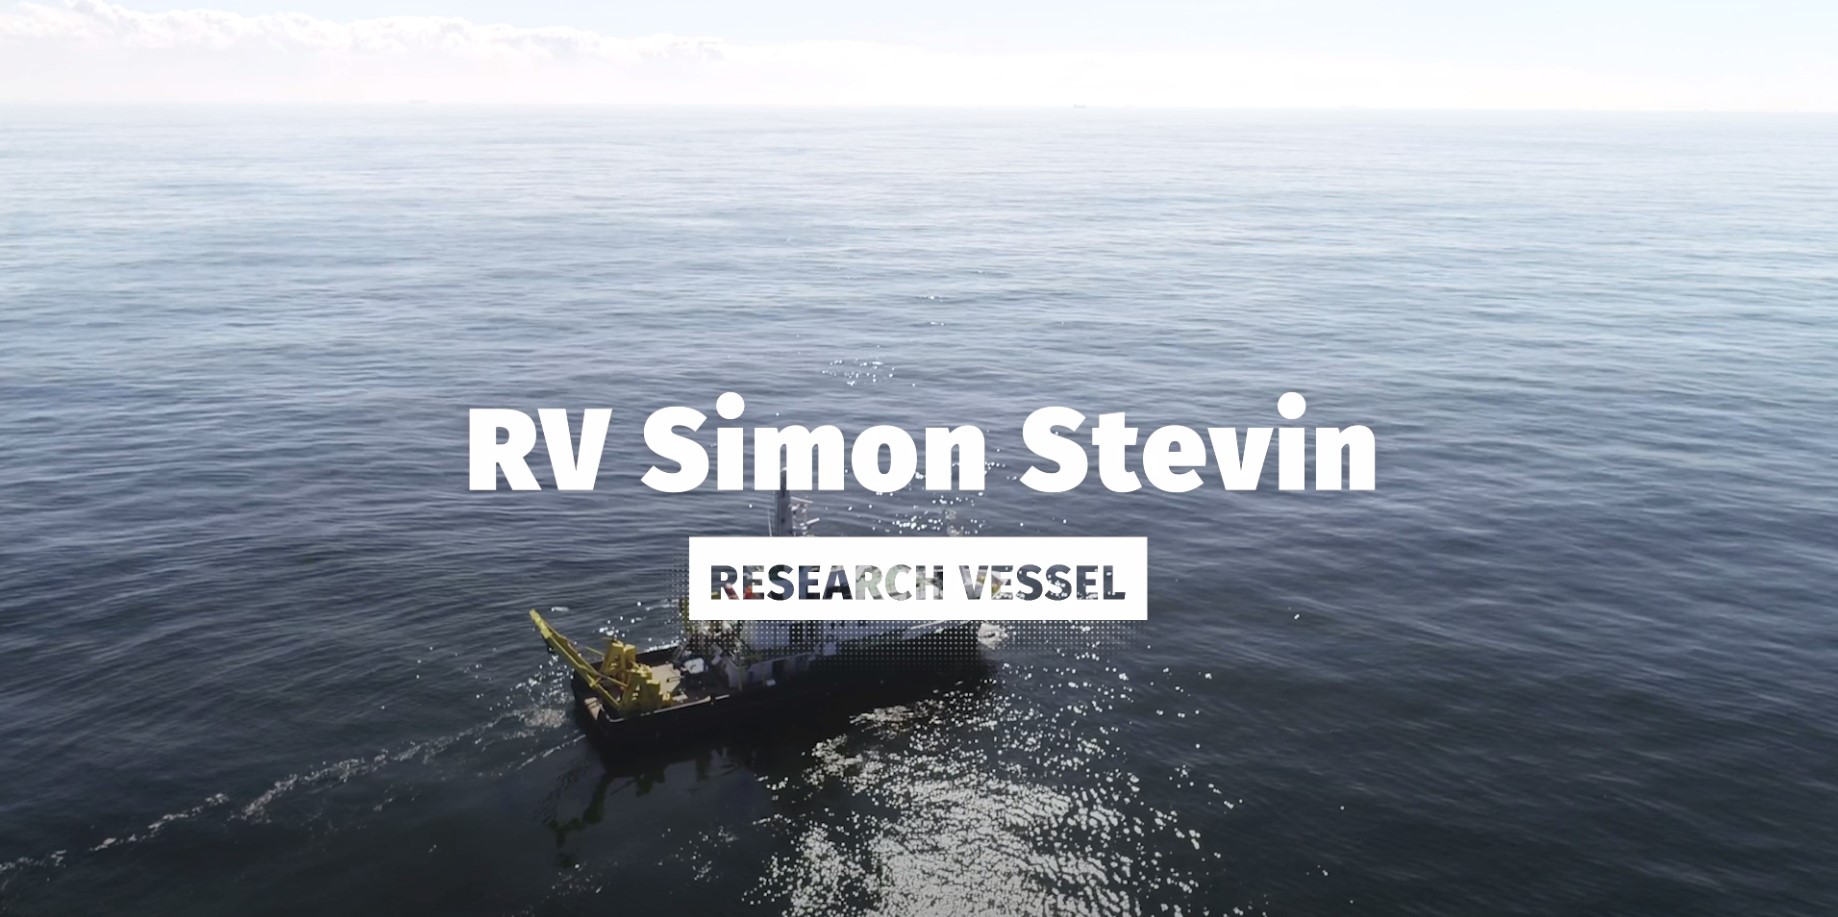 Het Vlaams onderzoeksschip RV Simon Stevin